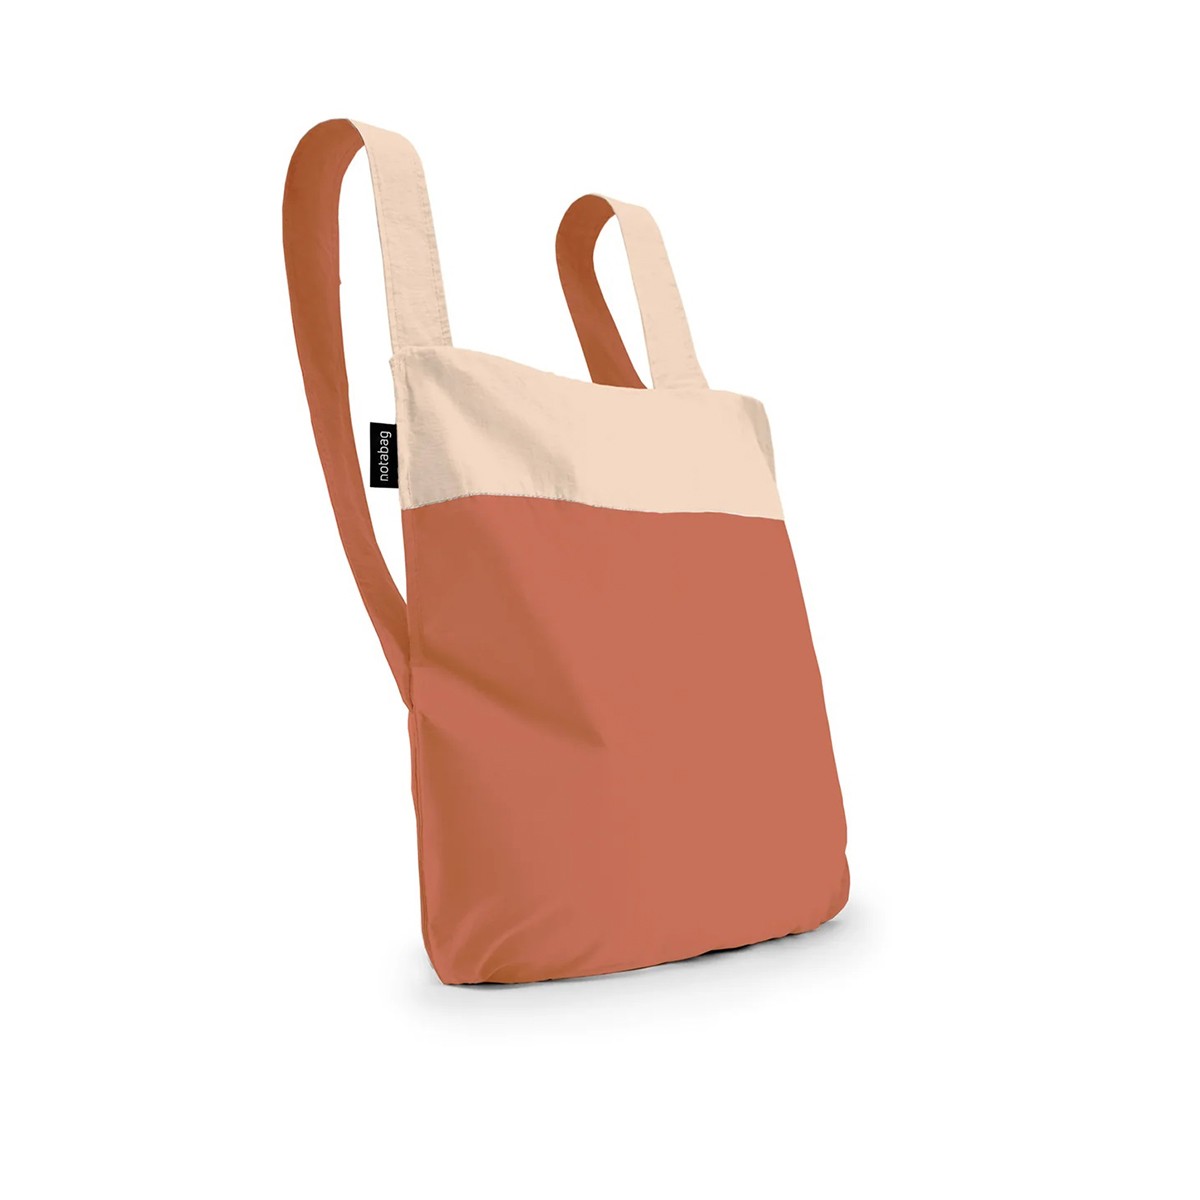 Shopping bag - Notabag Sand/Terracotta